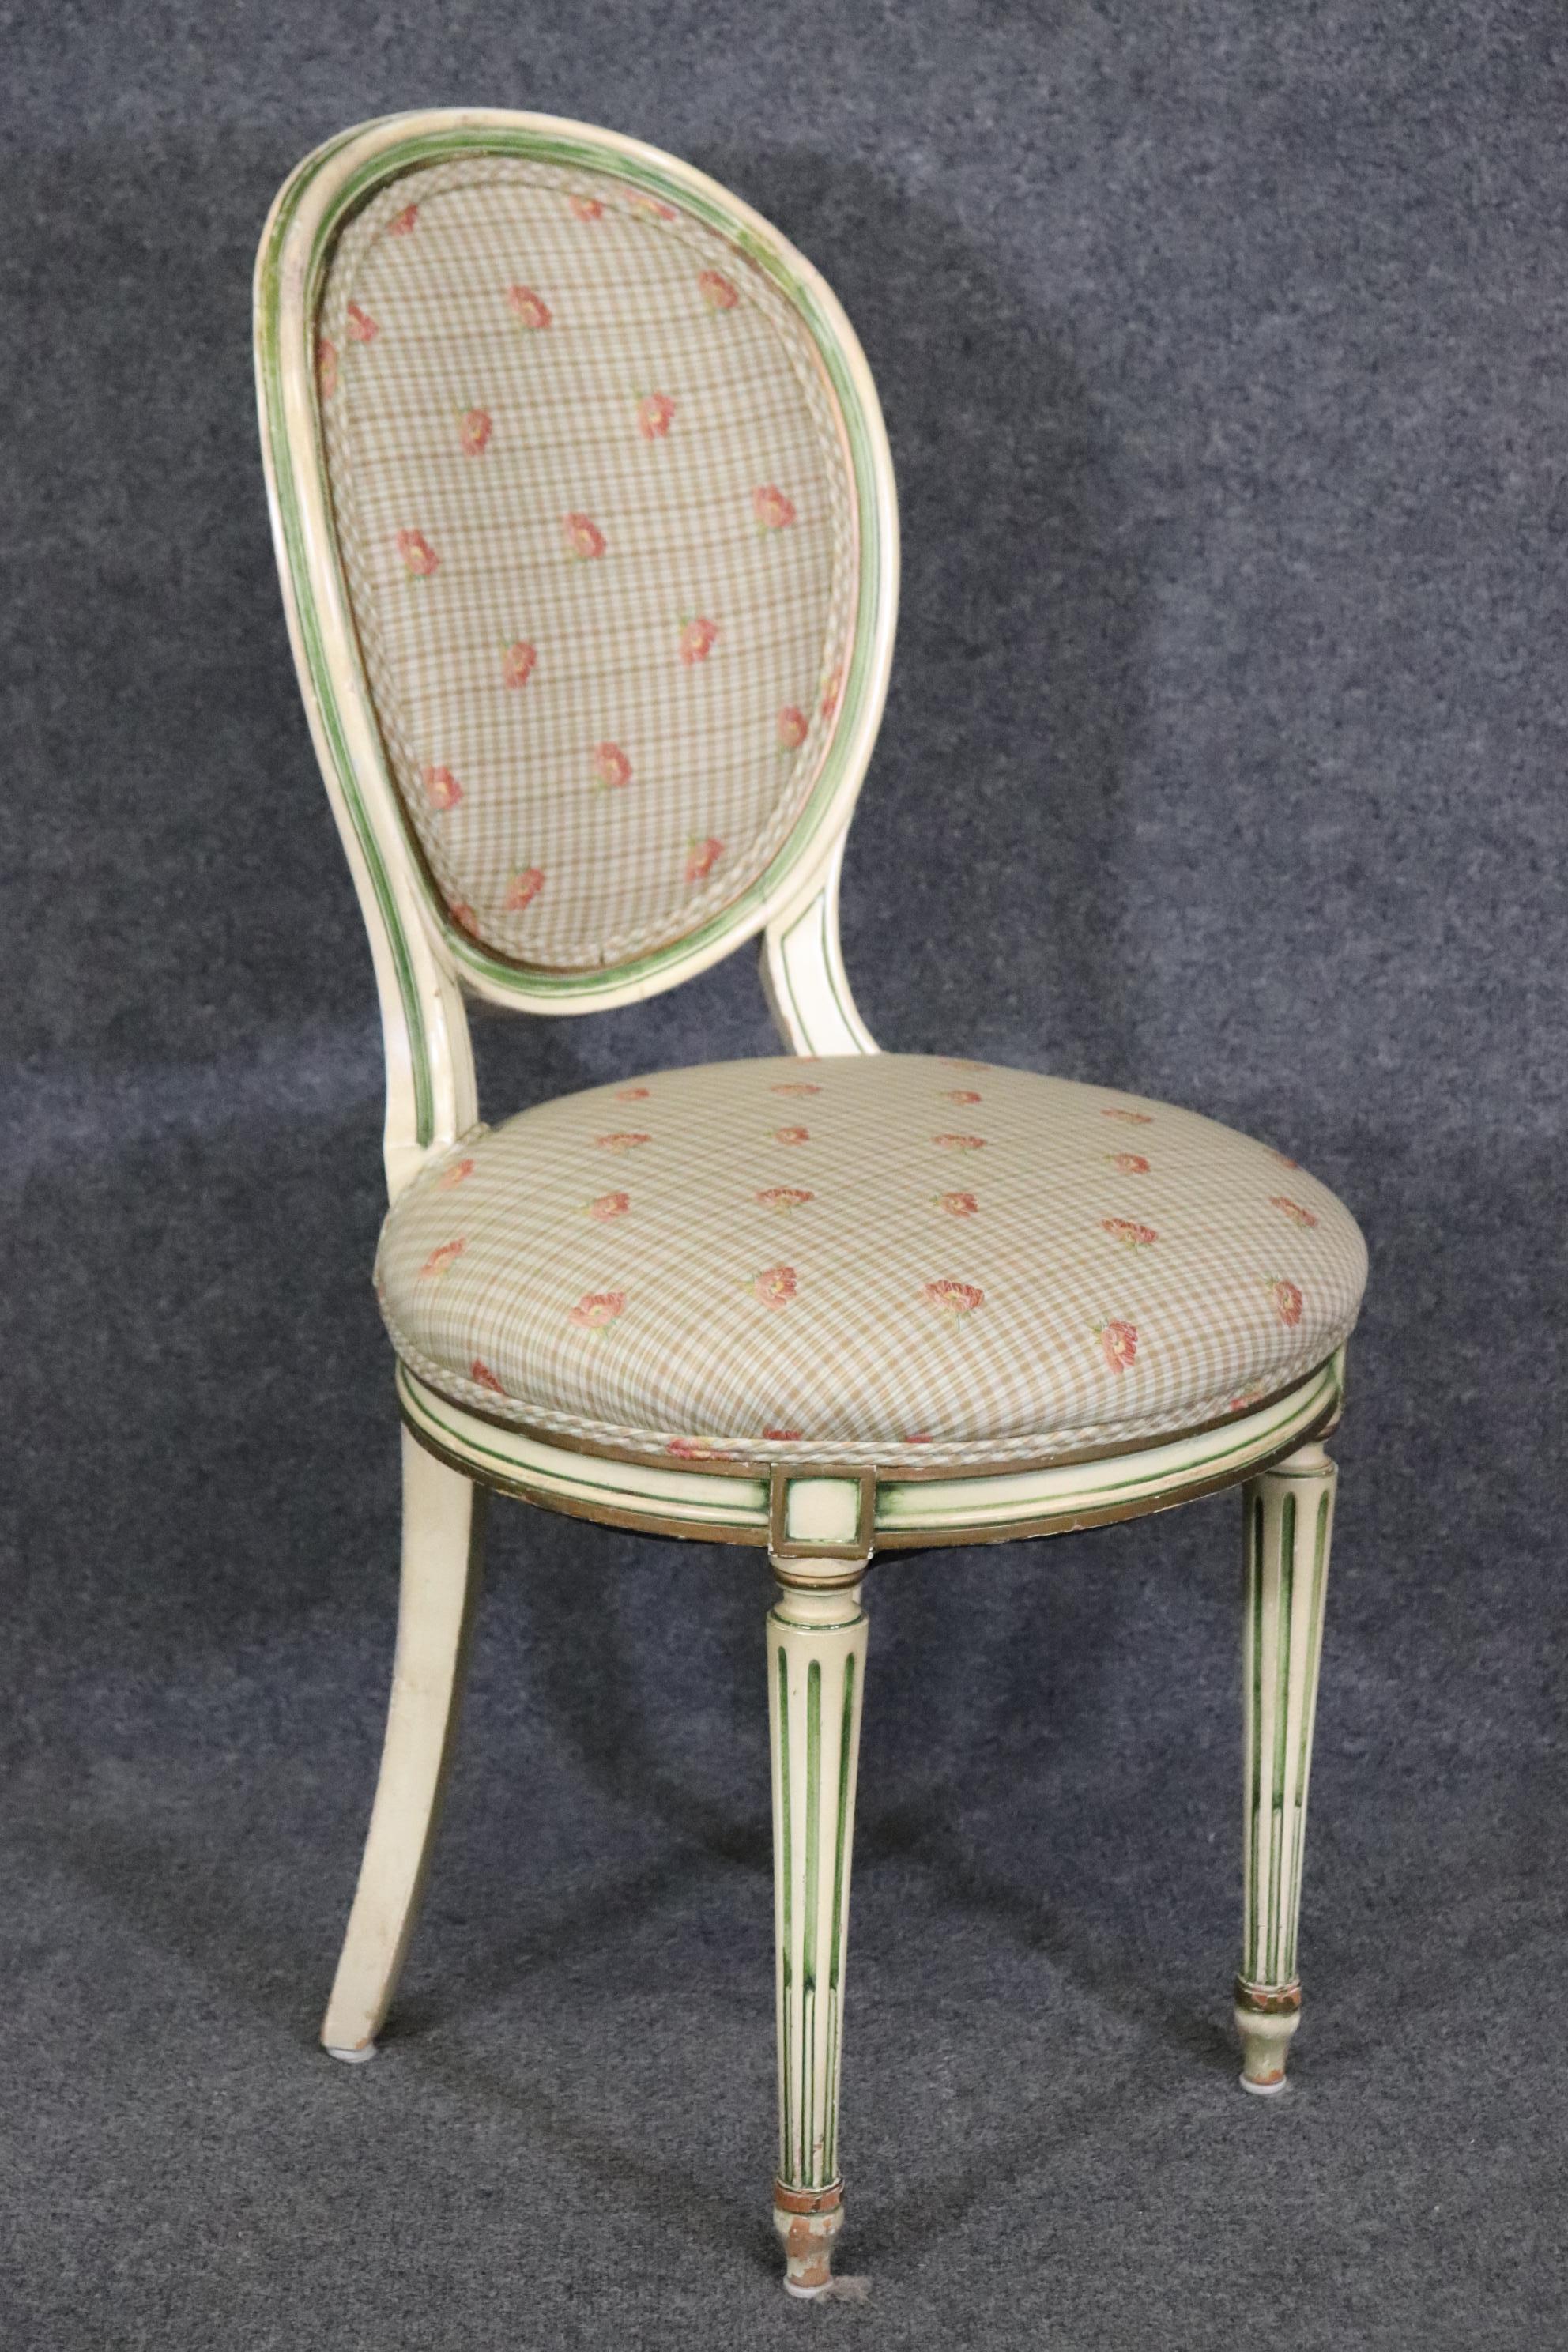 Abmessungen- H: 38 3/4in B: 19 3/4in T: 21 1/2in SH: 19 3/4in 
Dieses Set aus 4 Stühlen im Louis XVI-Stil ist mit viel Liebe zum Detail und von höchster Qualität gefertigt und kann sich mit Marken wie Baker und Bodart messen! Auf den Fotos sehen Sie